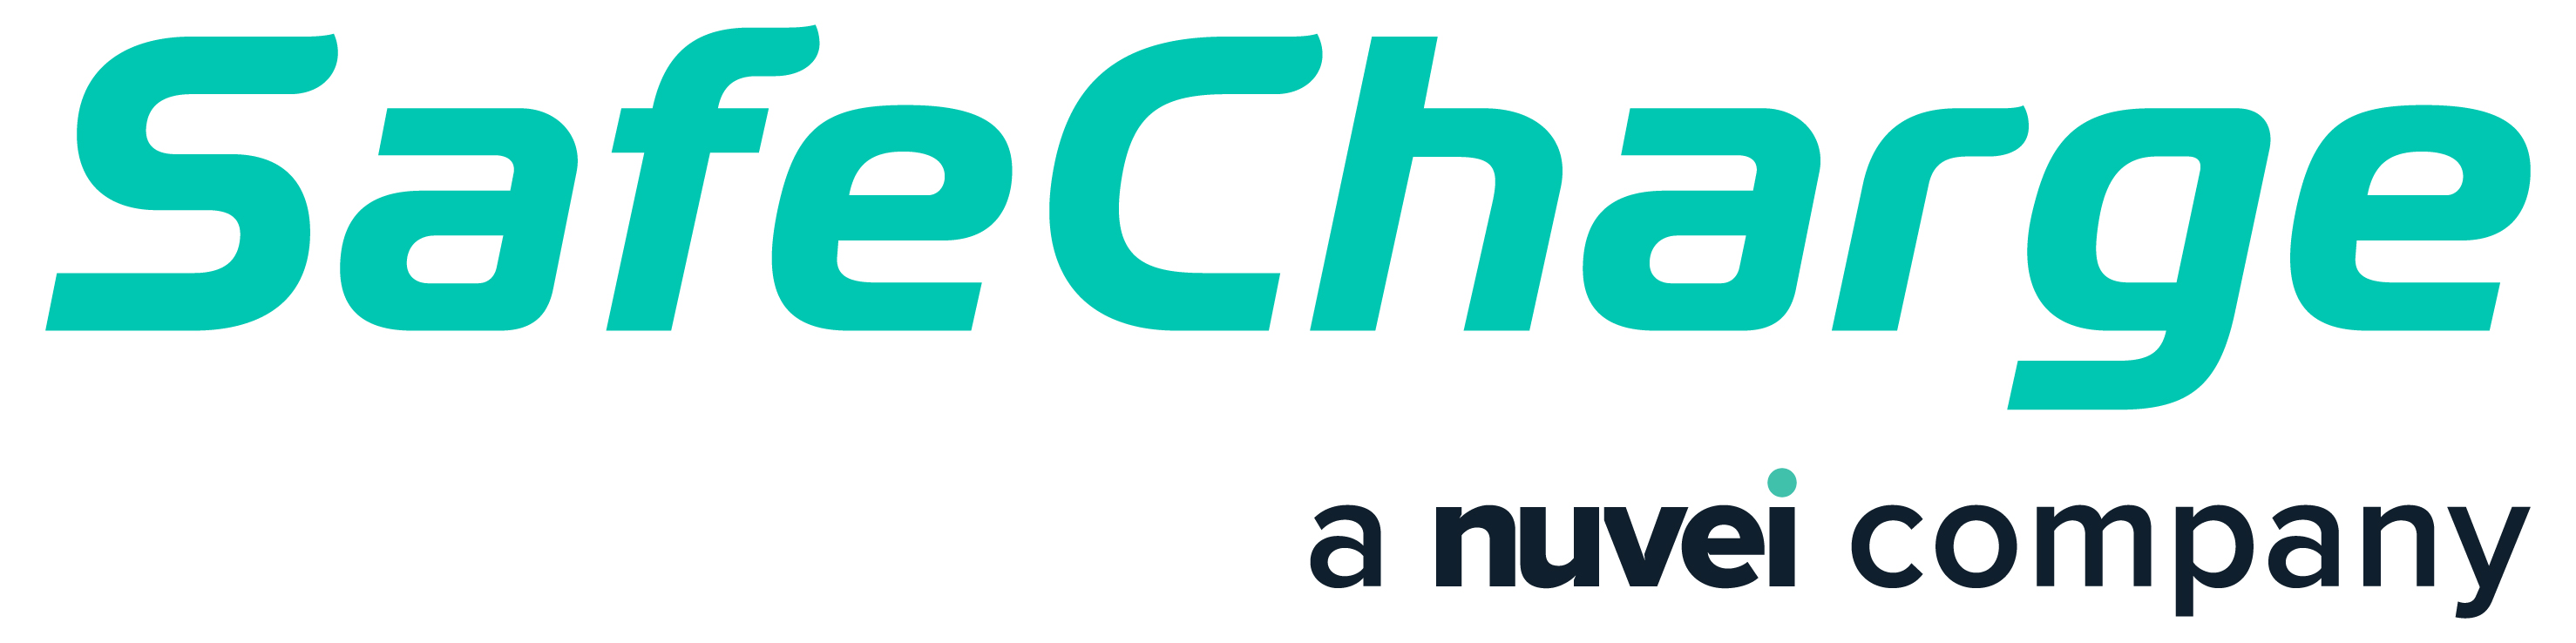 SafeCharge logo